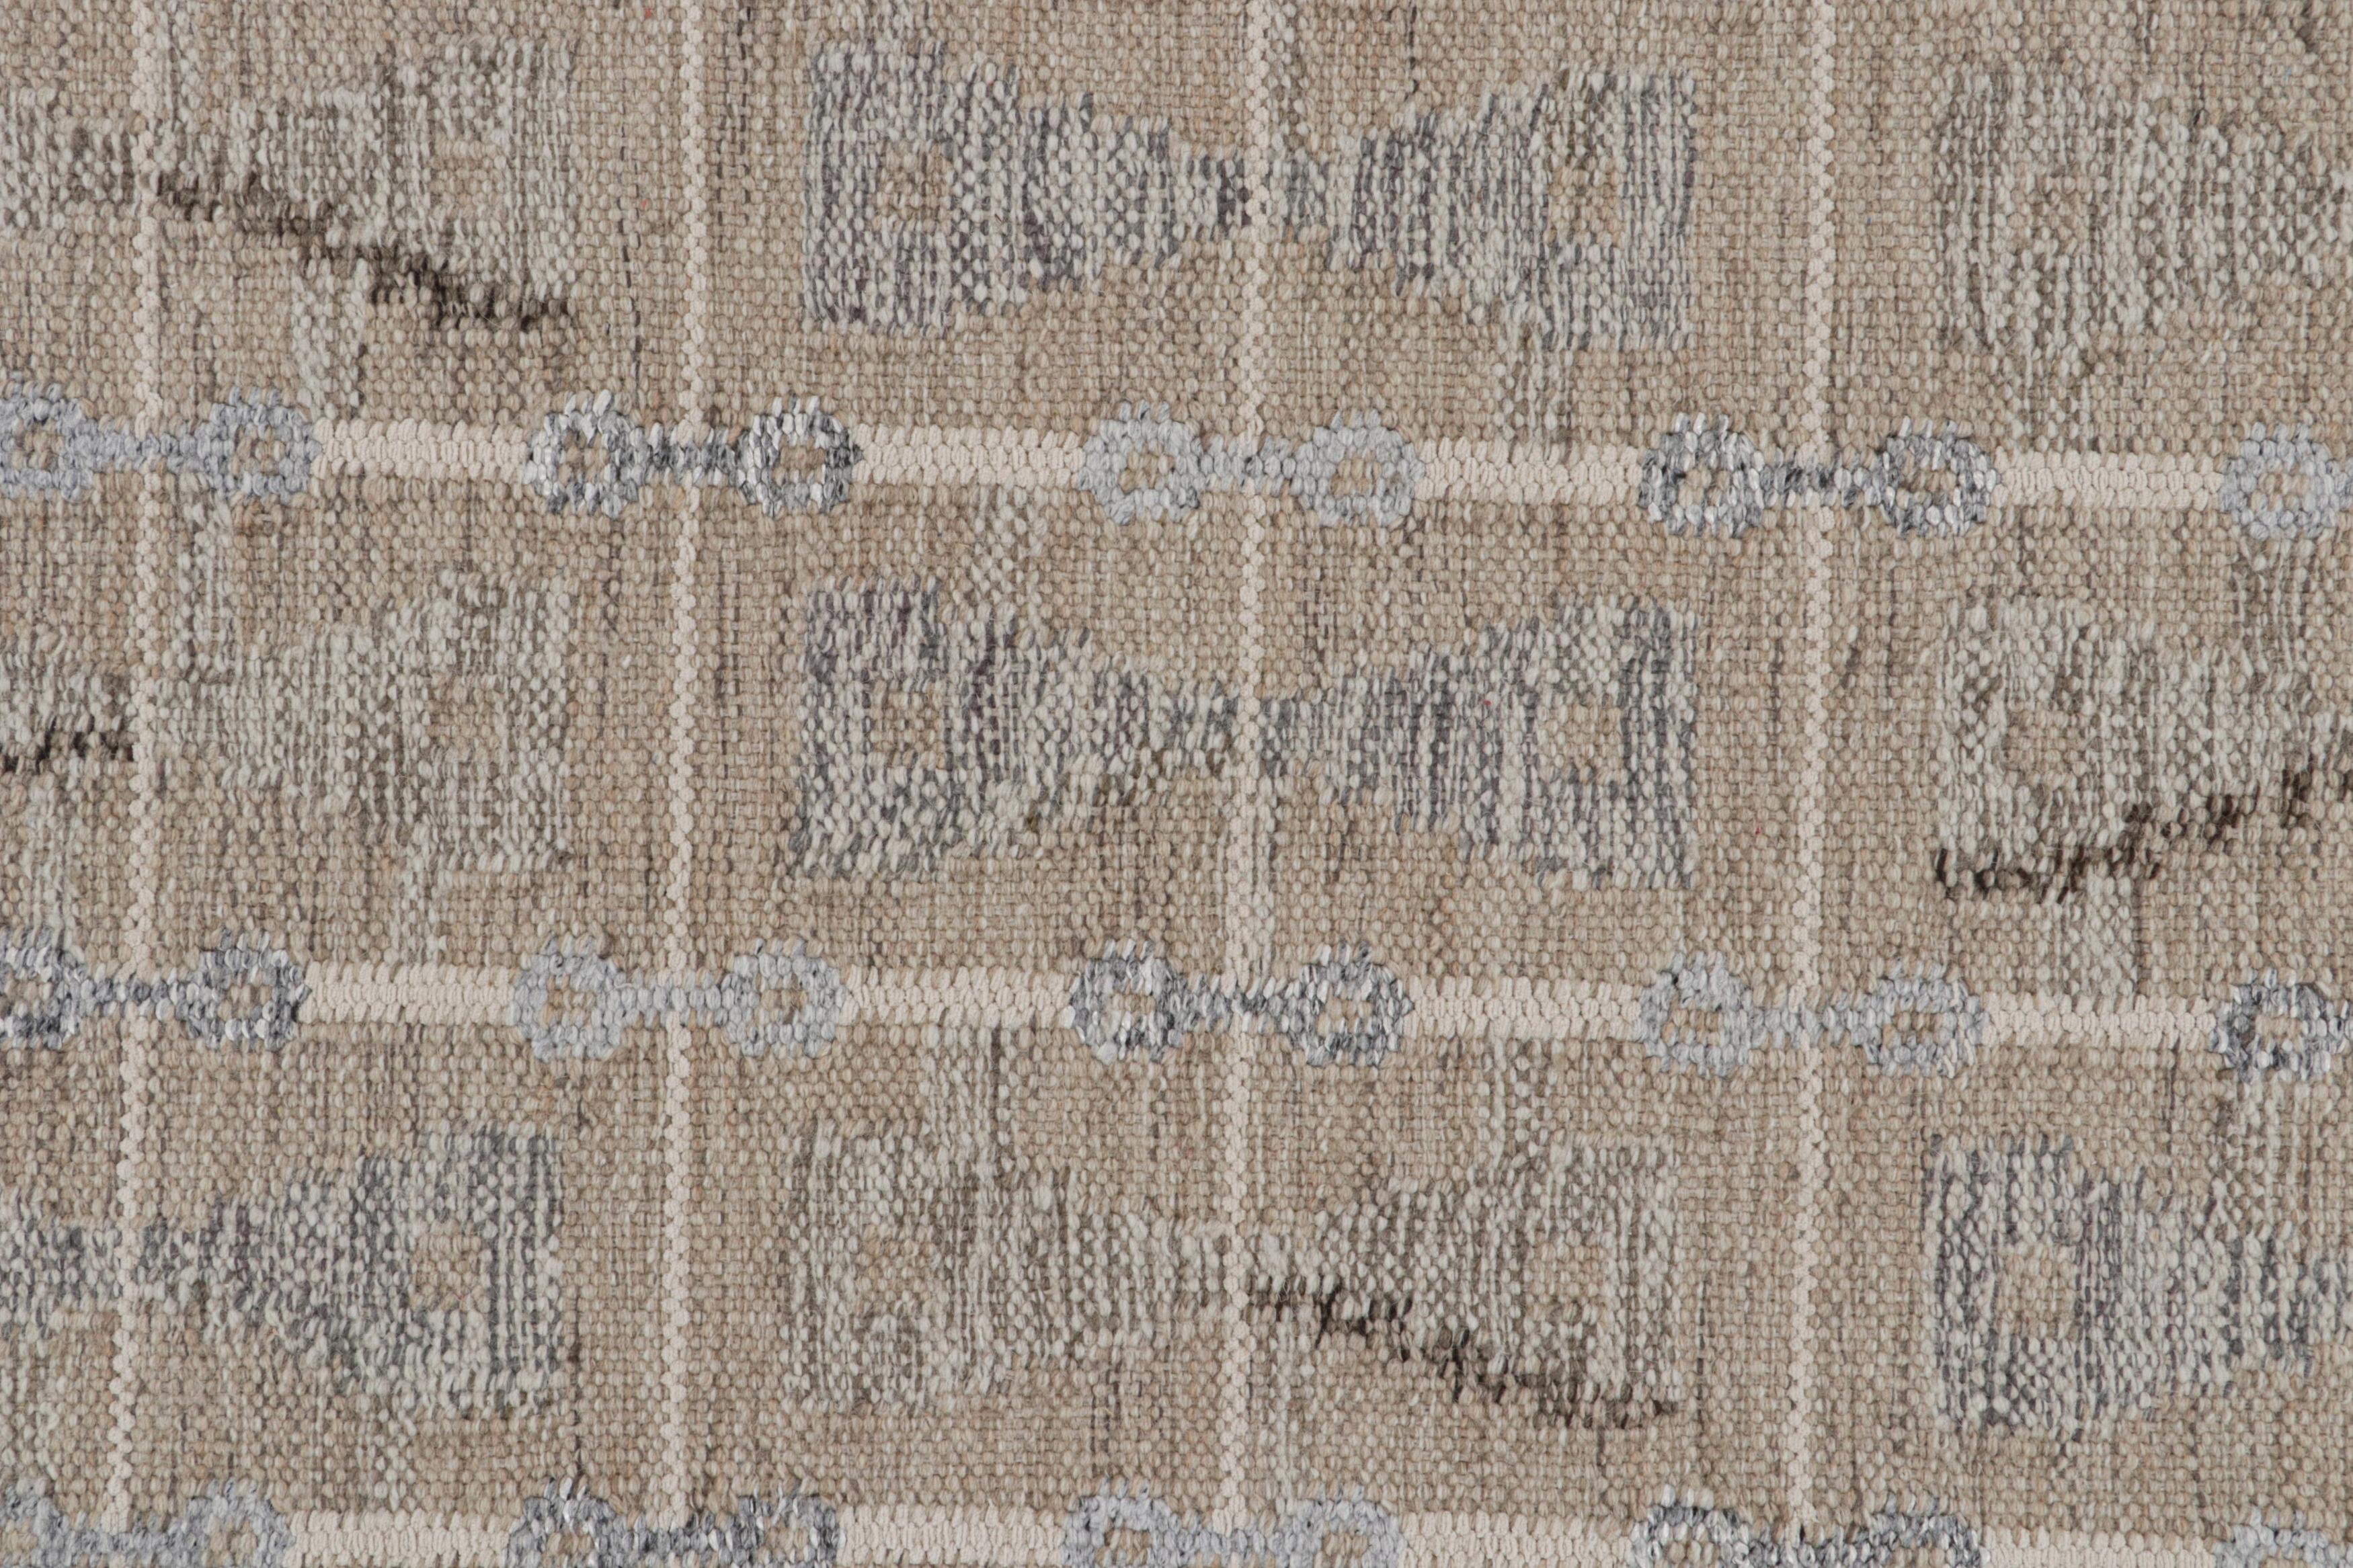 Rug & Kilim's Scandinavian Style Kilim in Gray & Beige Geometric Patterns (Kilim de style scandinave à motifs géométriques gris et beige) Neuf - En vente à Long Island City, NY